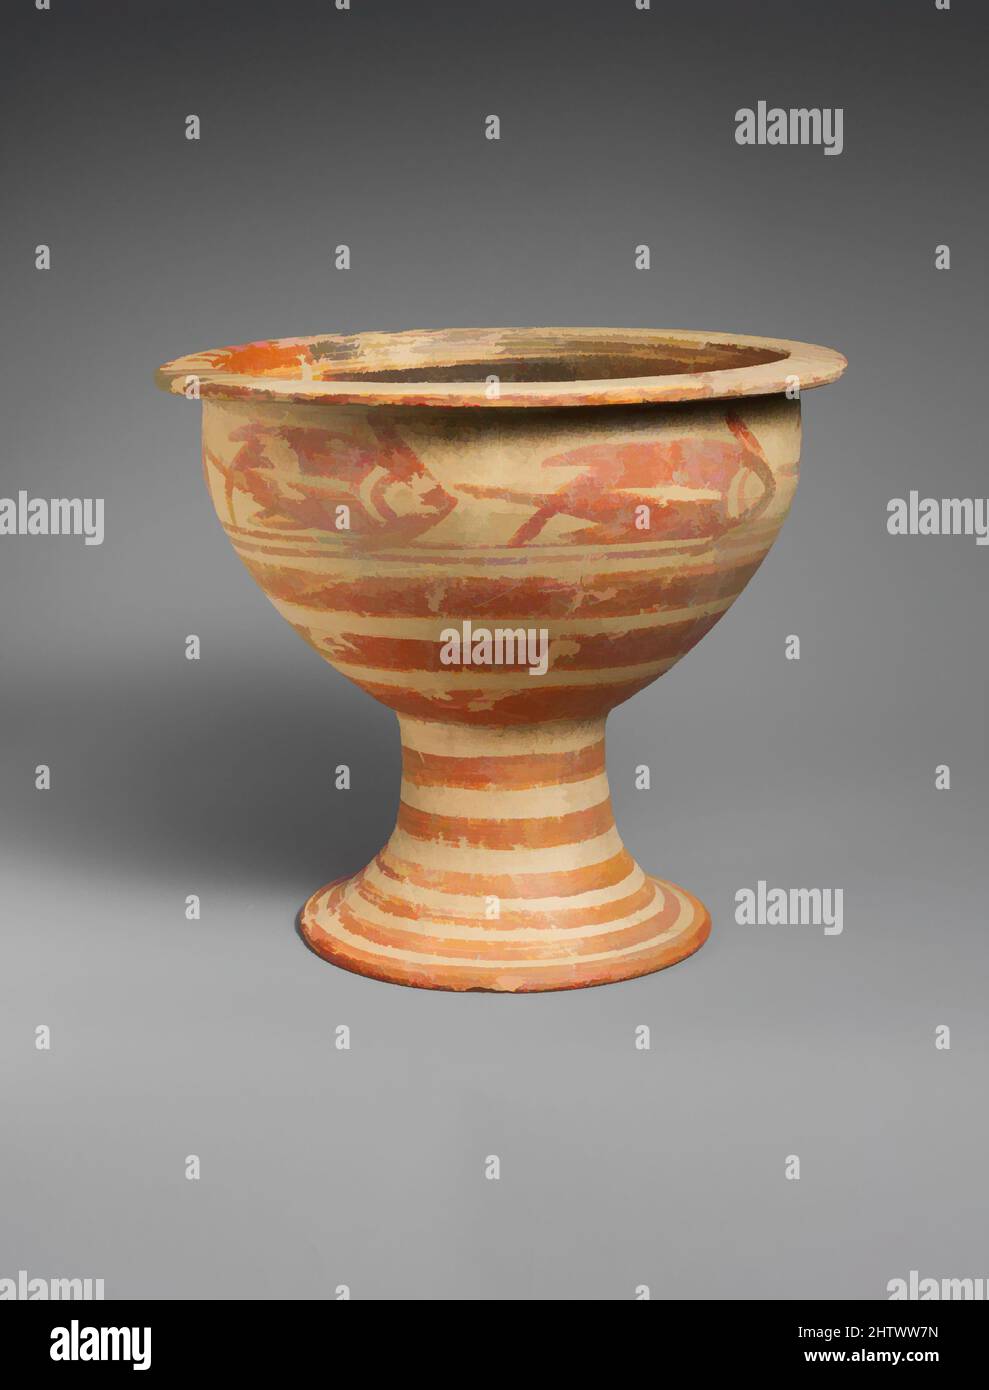 Ceramica geometrica immagini e fotografie stock ad alta risoluzione - Alamy